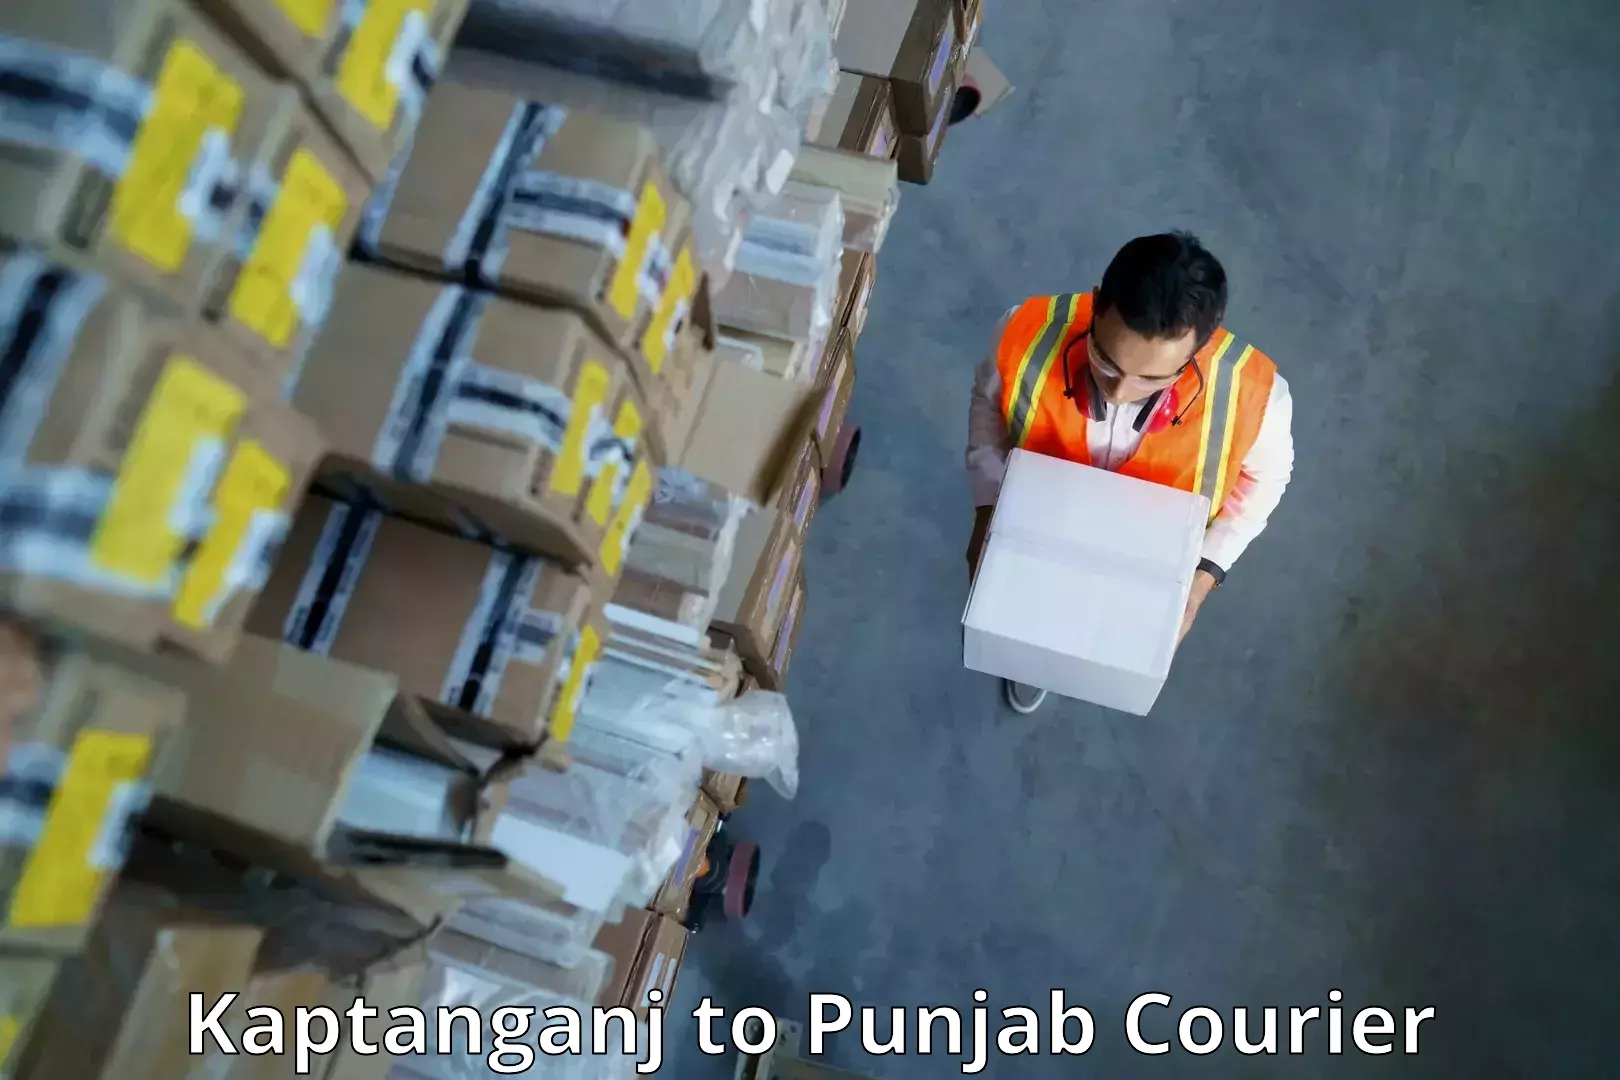 International shipping in Kaptanganj to Mohali